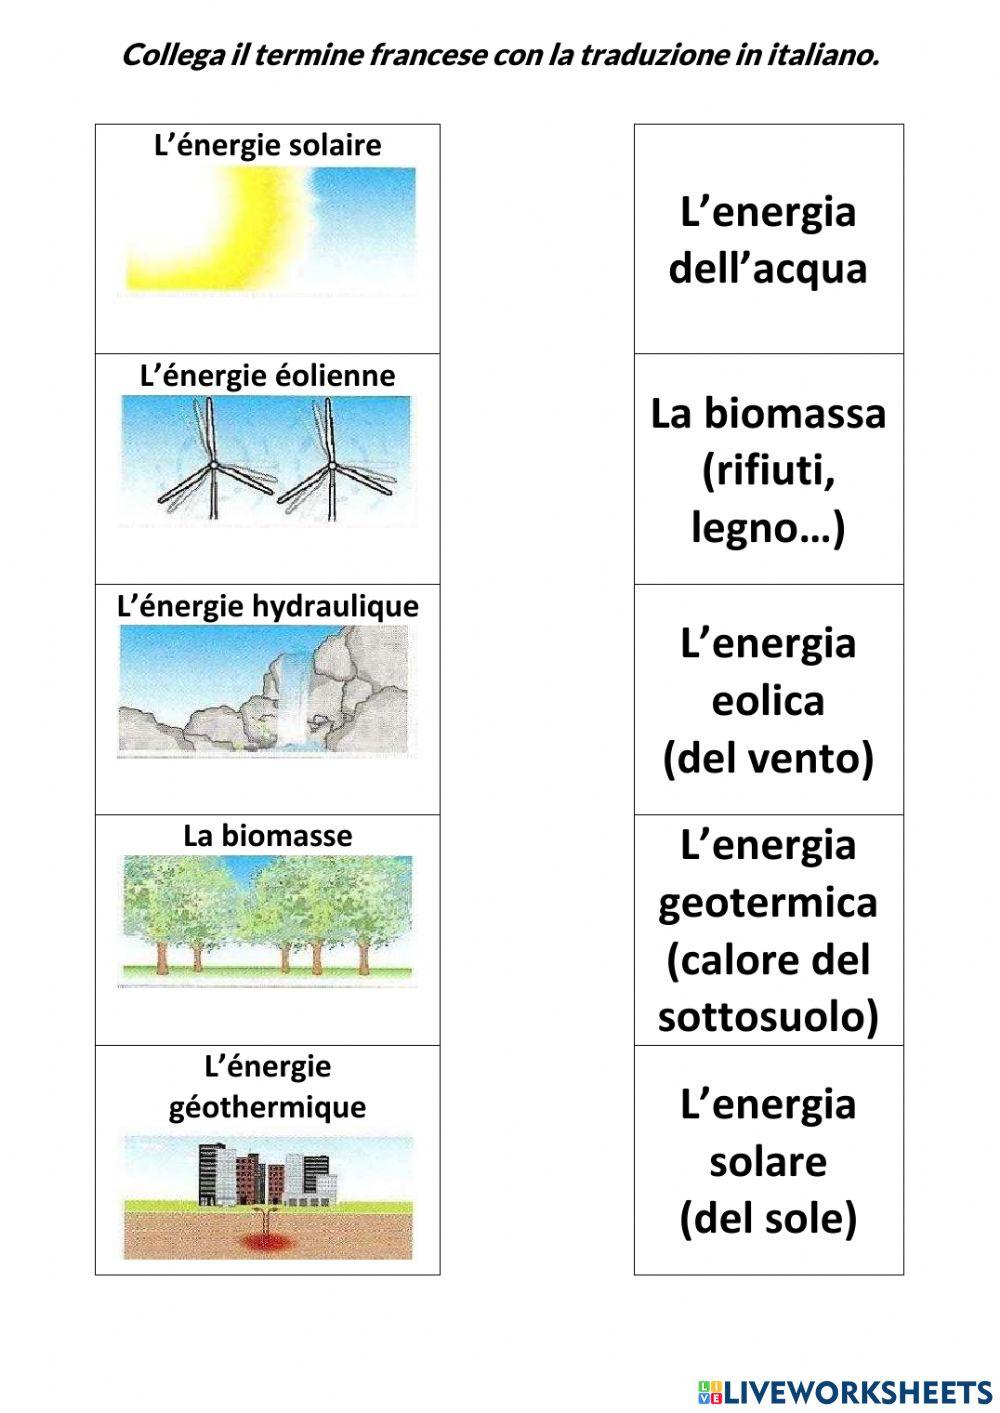 Les energies renouvelables